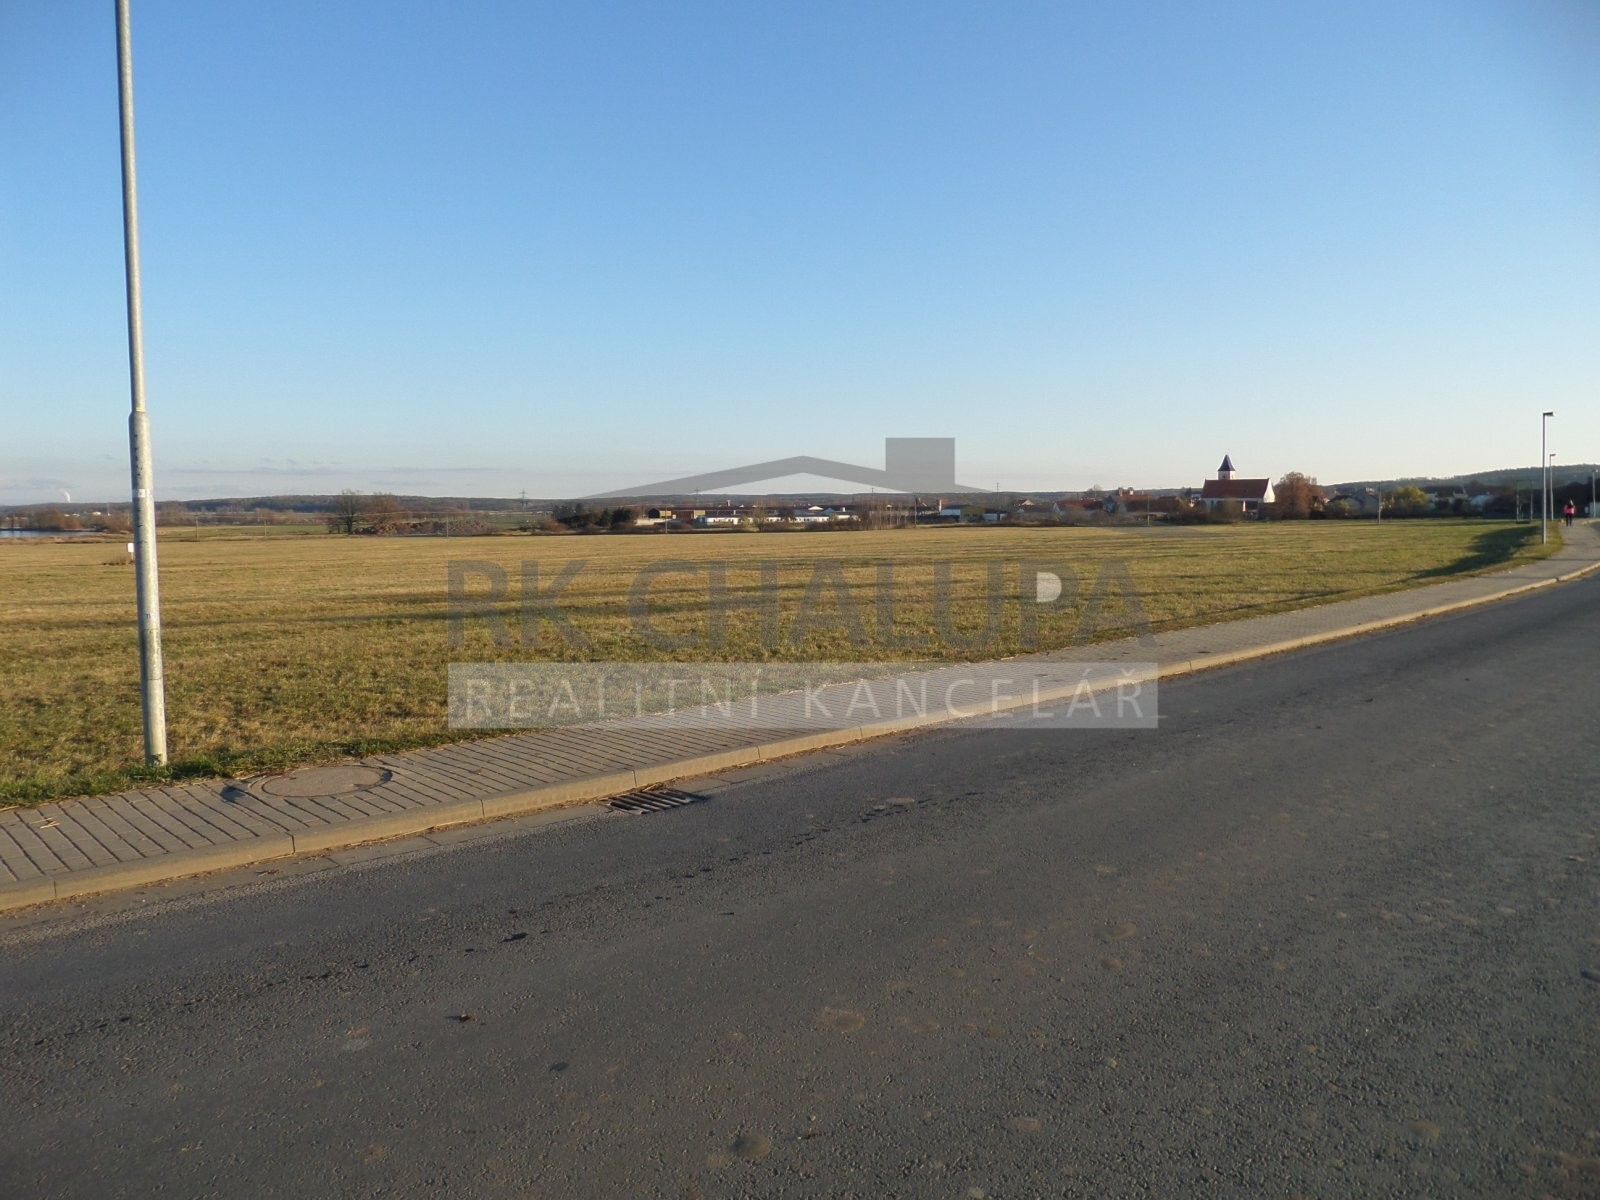 Prodej pozemku v Křenovicích u Dubného, celkem 2.582 m2, v zastavitelném území, budoucí záměr